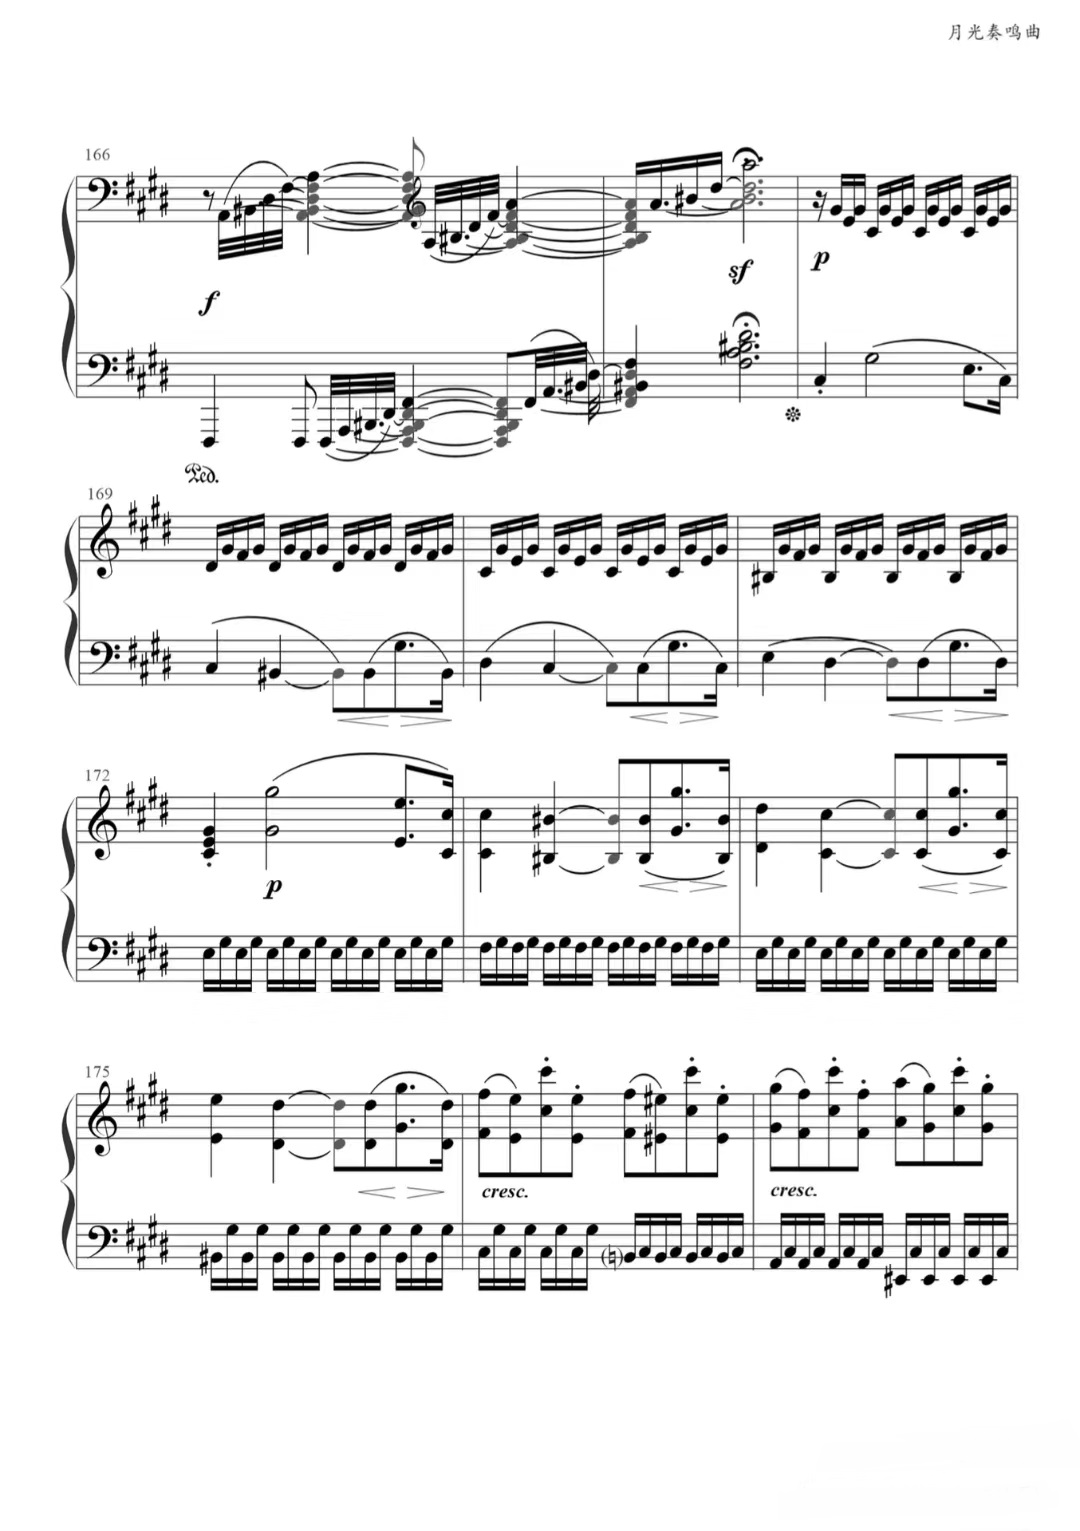 【月光曲】的钢琴谱简谱 – 第三乐章